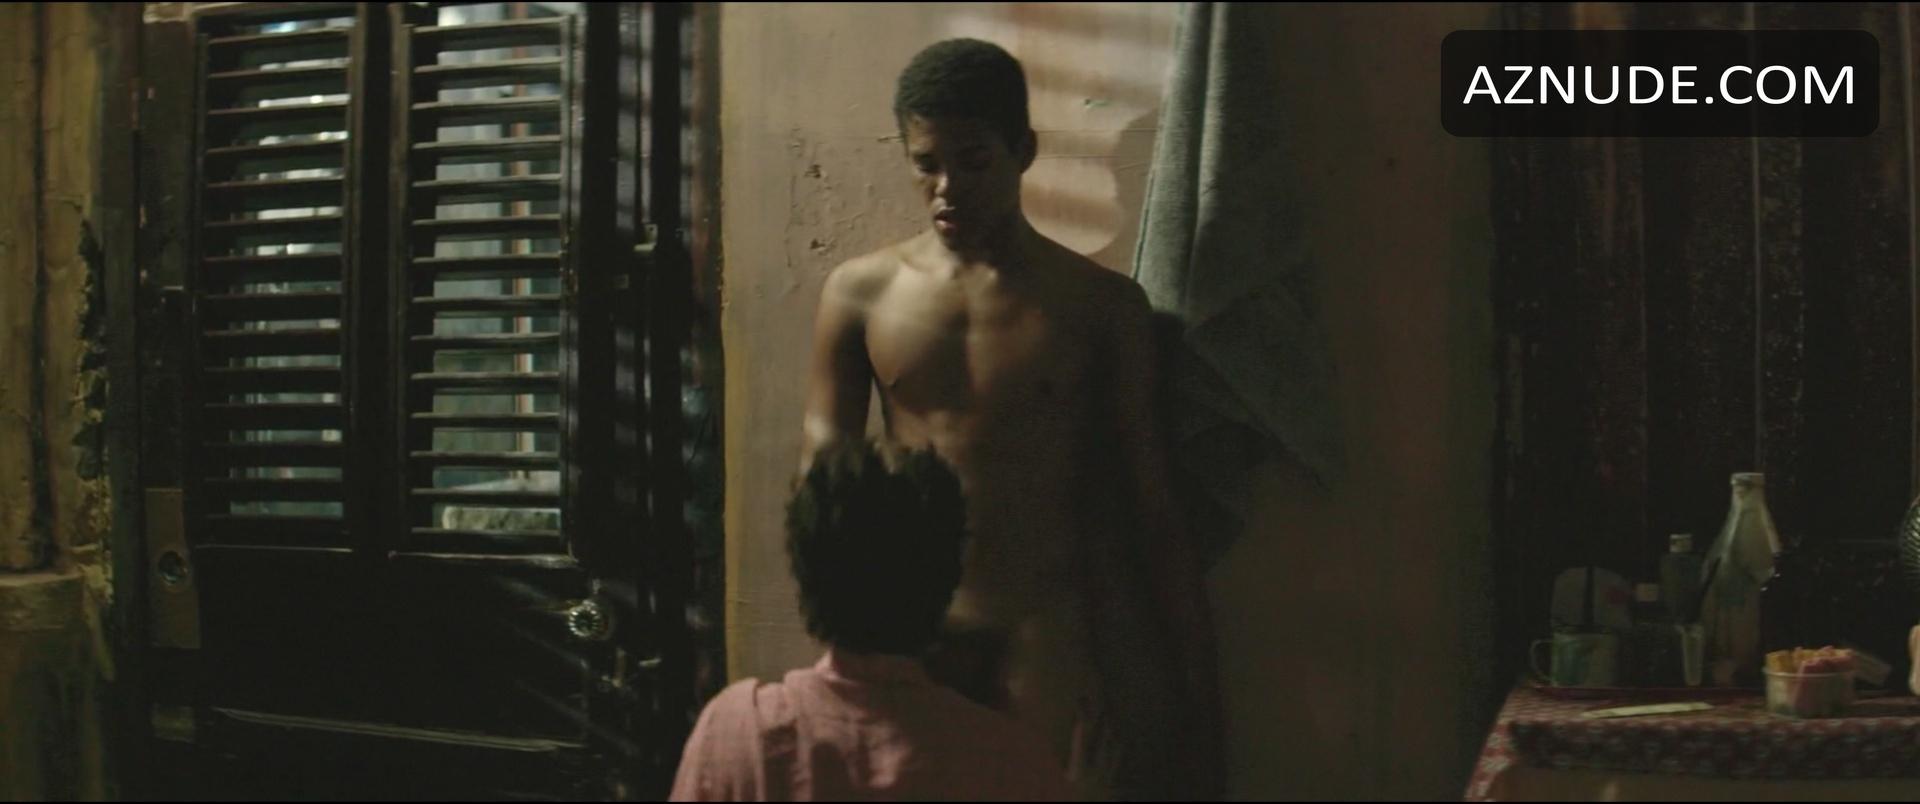 El Rey De La Habana Nude Scenes Aznude Men